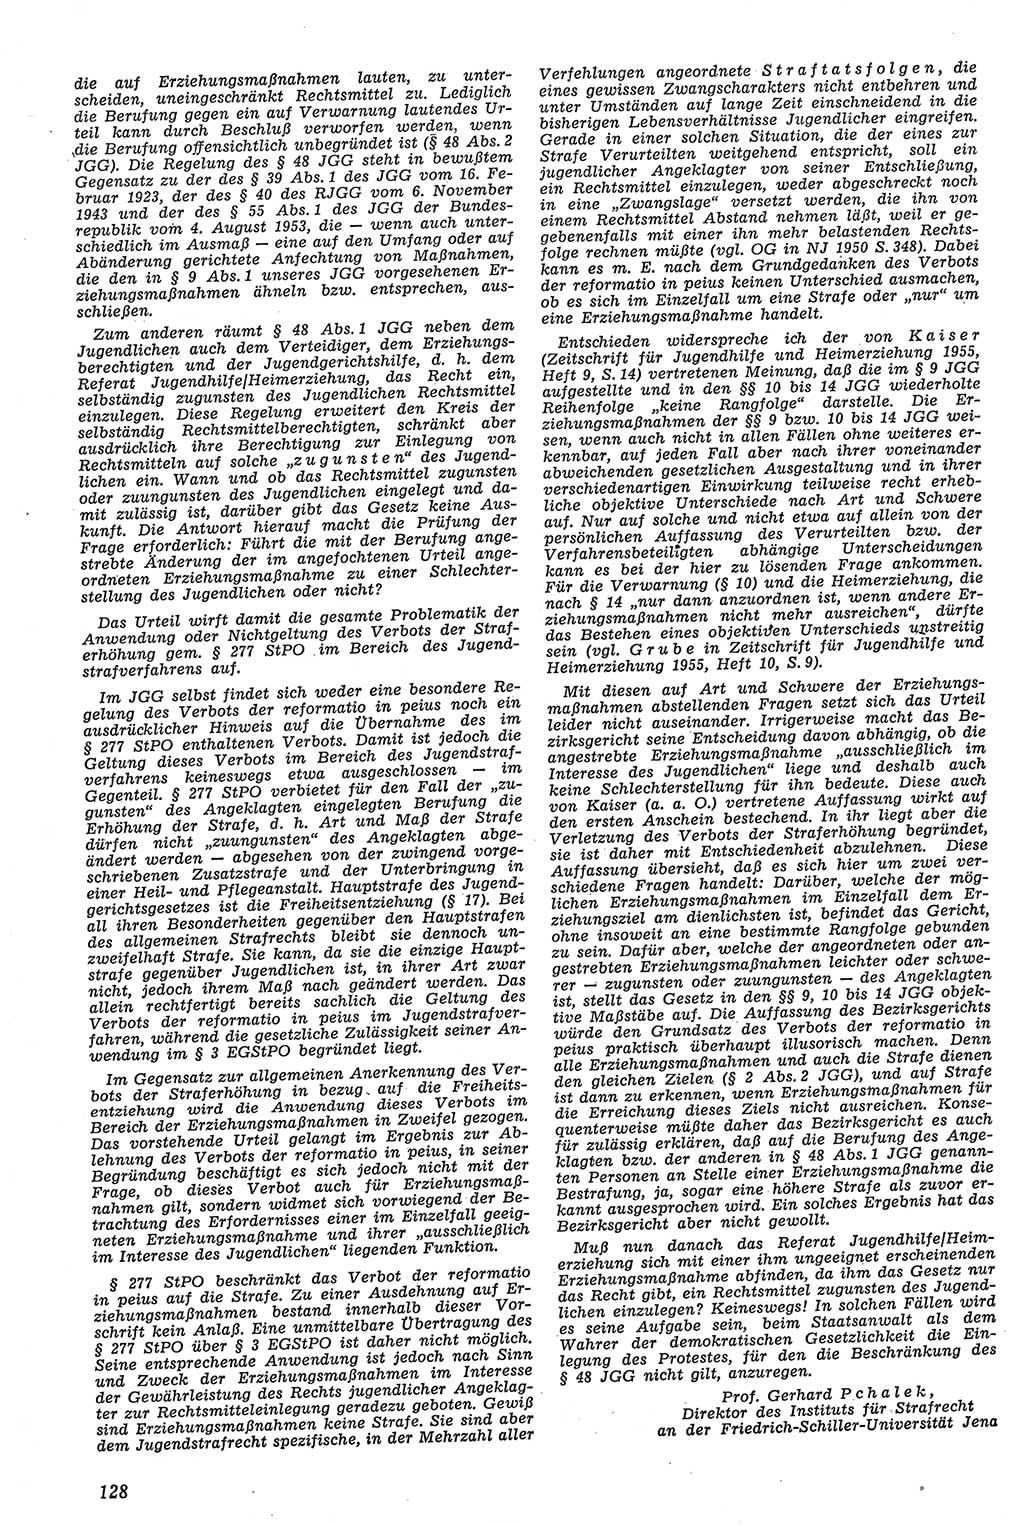 Neue Justiz (NJ), Zeitschrift für Recht und Rechtswissenschaft [Deutsche Demokratische Republik (DDR)], 11. Jahrgang 1957, Seite 128 (NJ DDR 1957, S. 128)